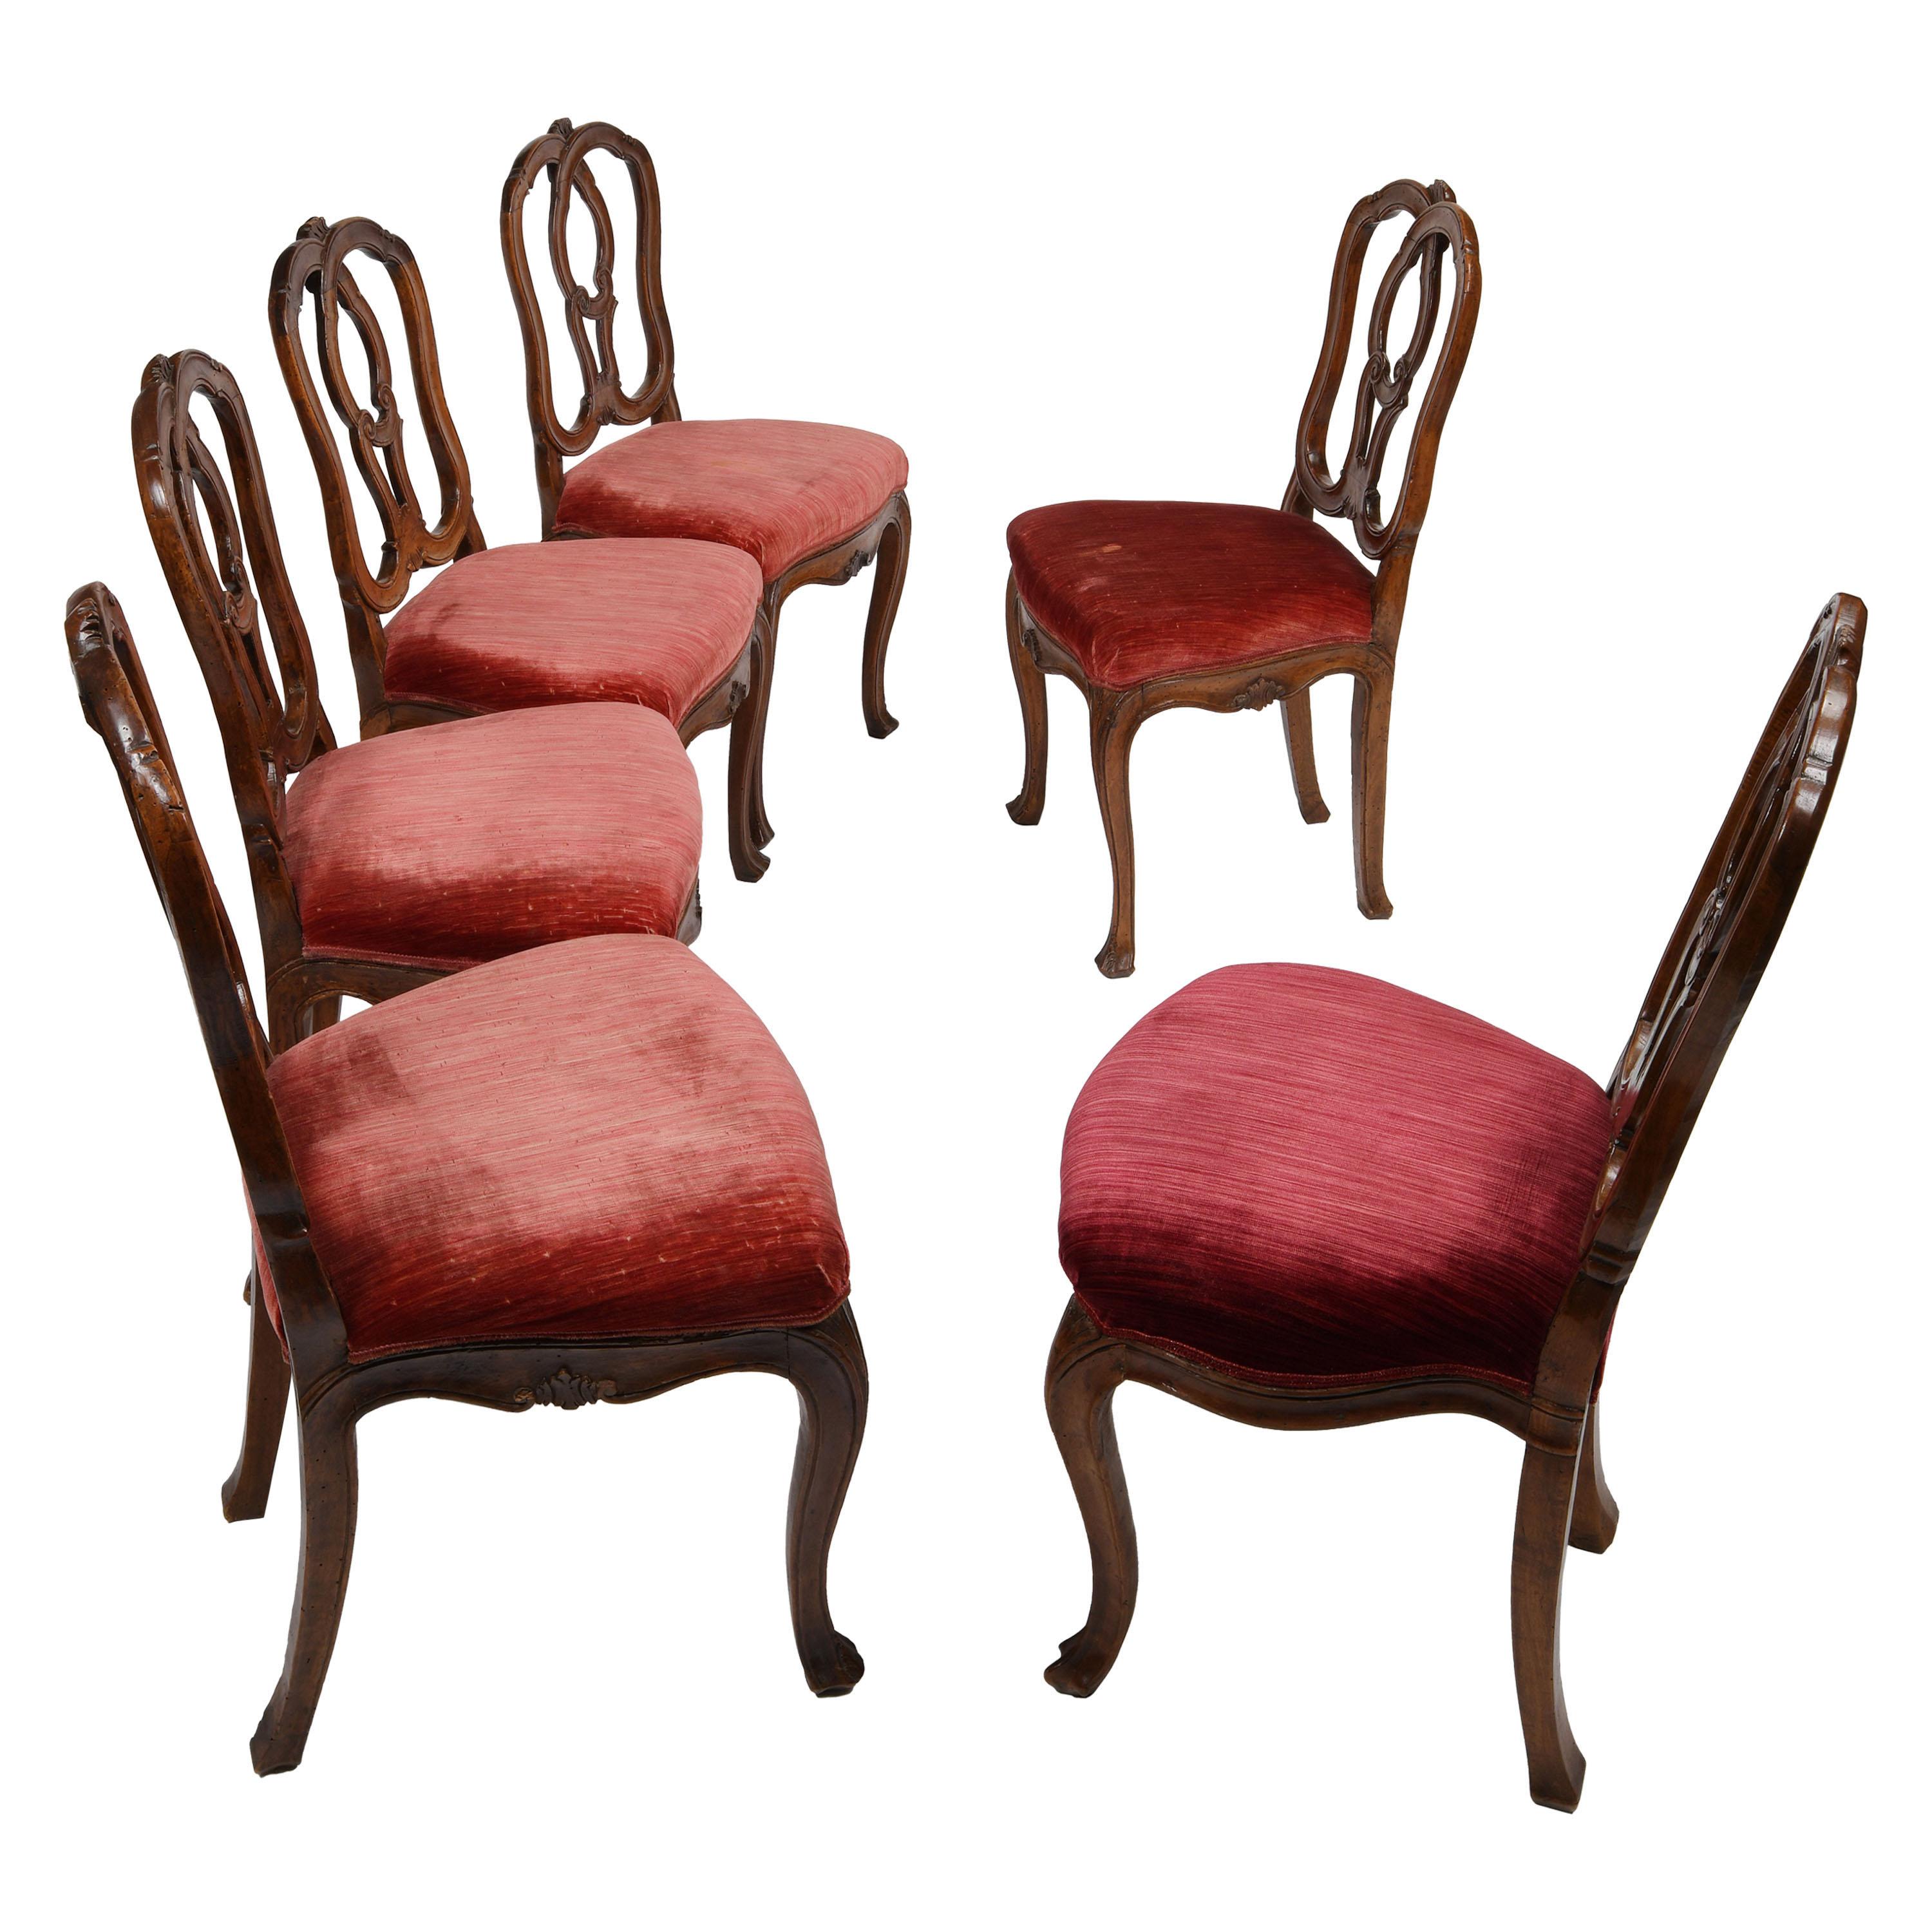 Six chaises italiennes du milieu du XVIIIe siècle, Venise, vers 1750